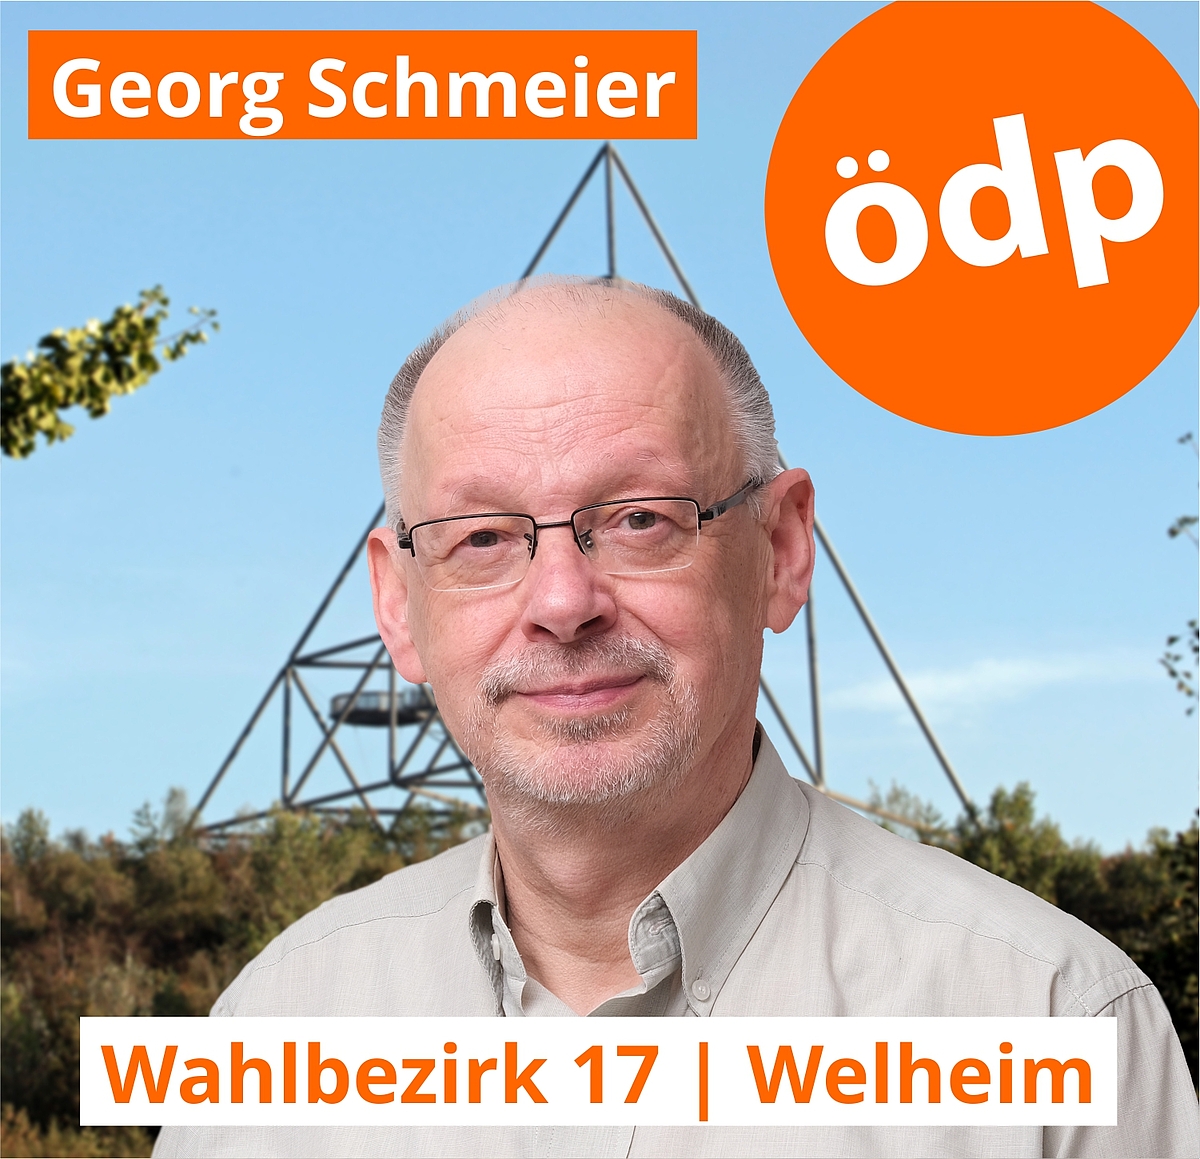 Georg Schmeier | Wahlbezirk 17 | Welheim